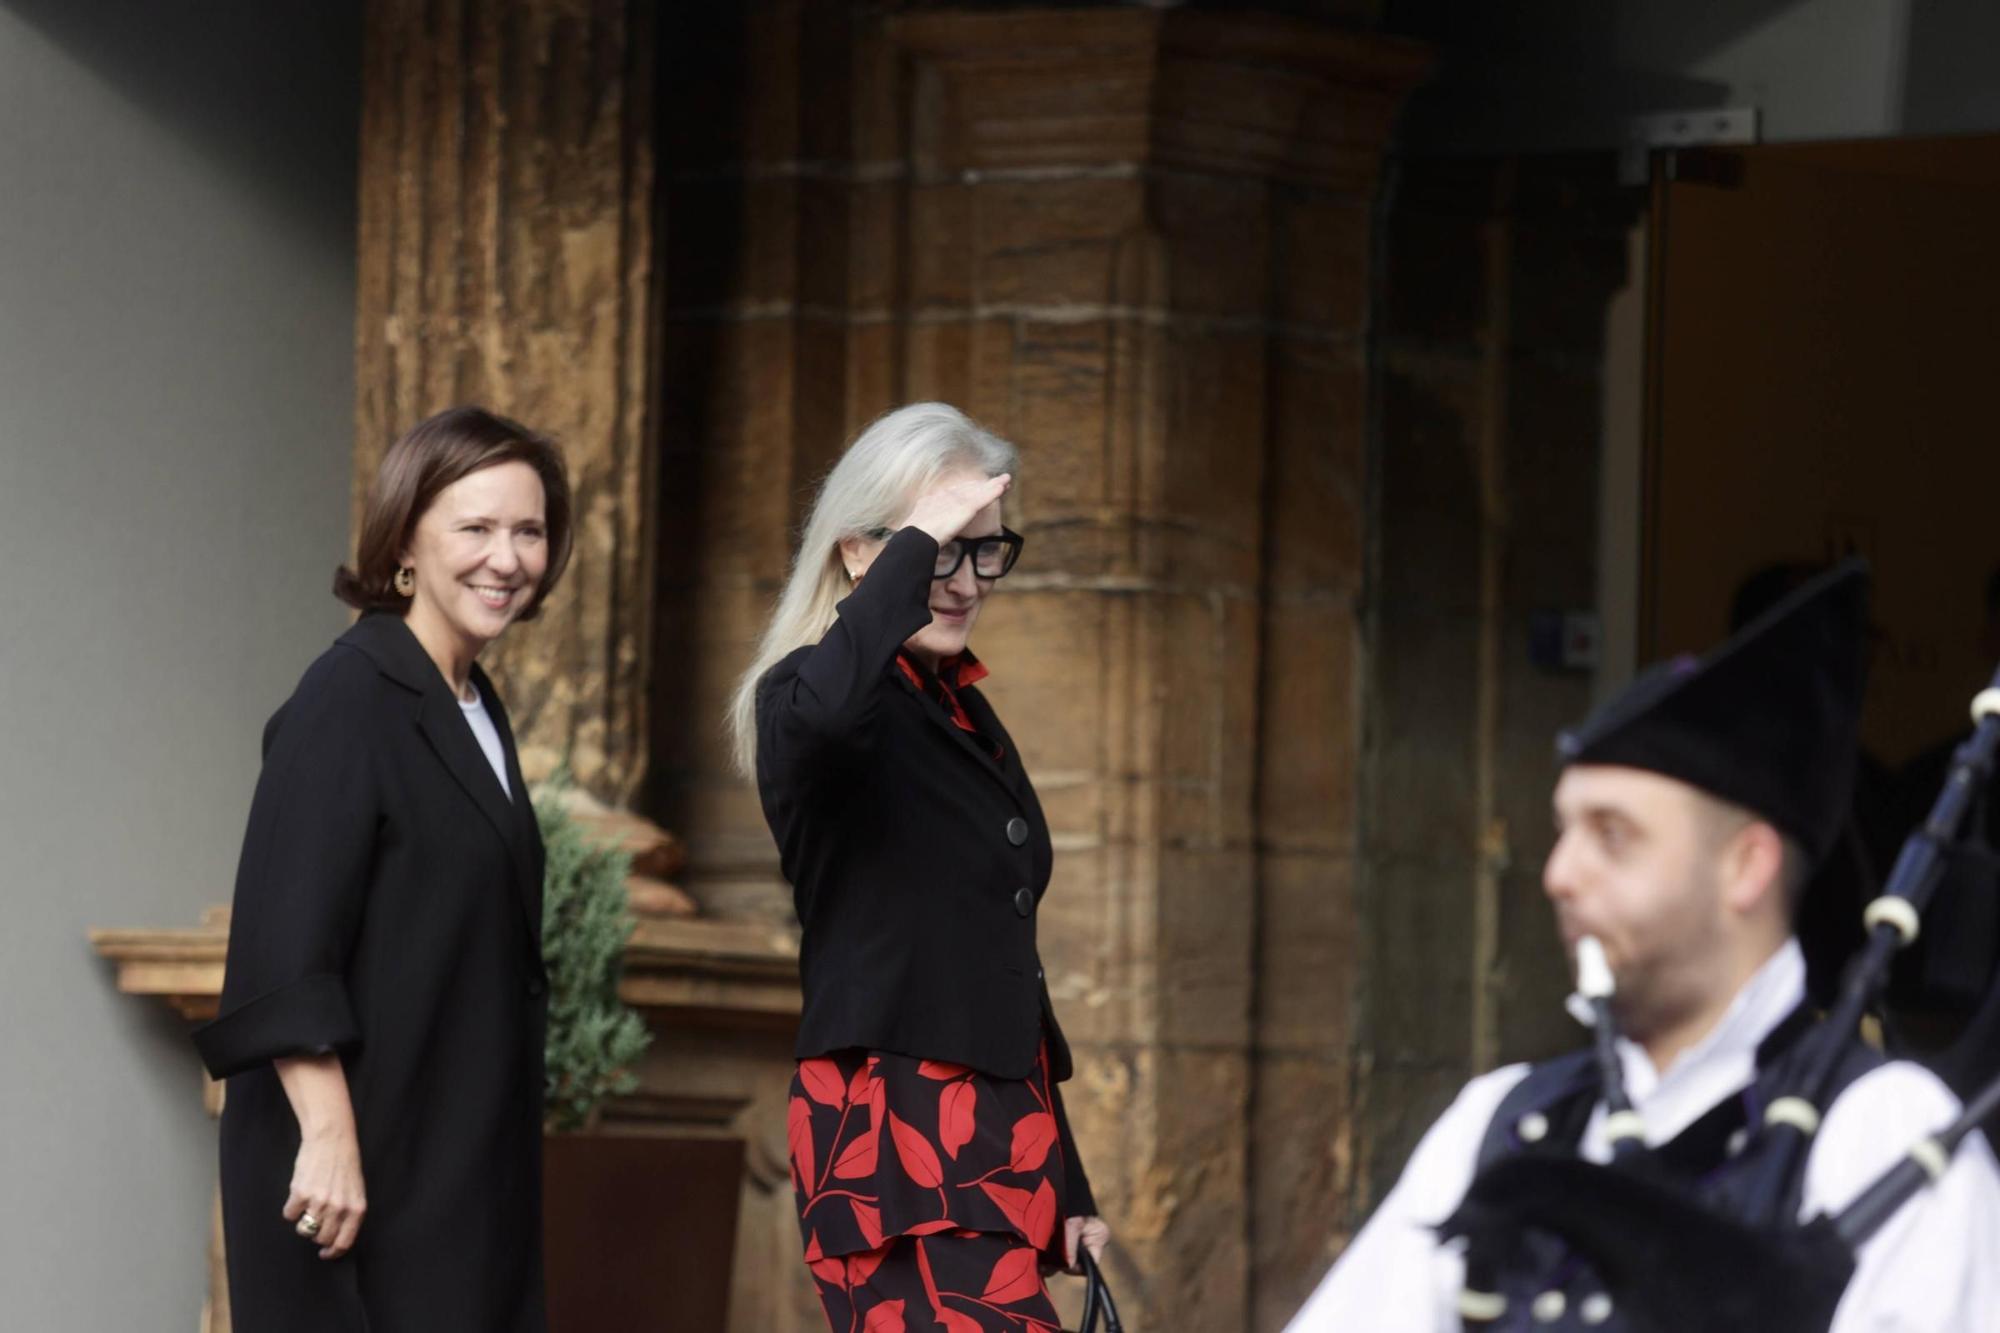 EN IMÁGENES: Así fue la llegada oficial de Meryl Streep a Asturias para recibir el premio "Princesa" de las Artes